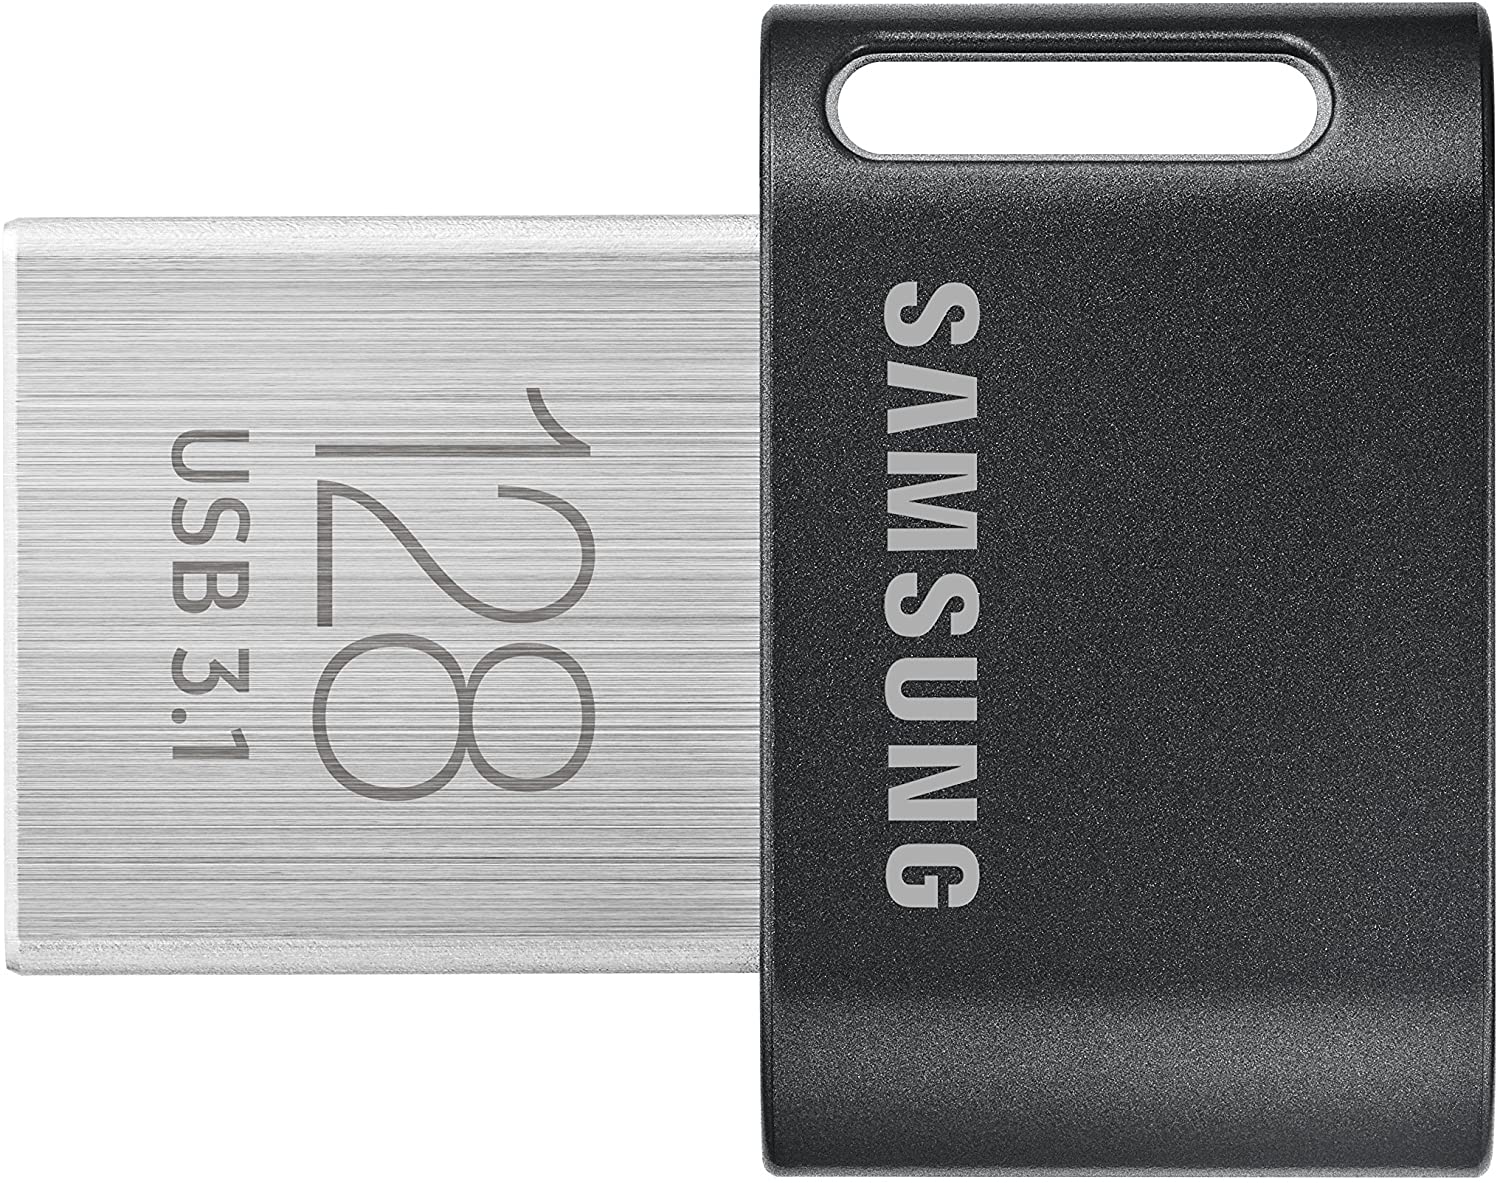 Samsung FIT Plus 128 GB USB 3.1 Flash Drive